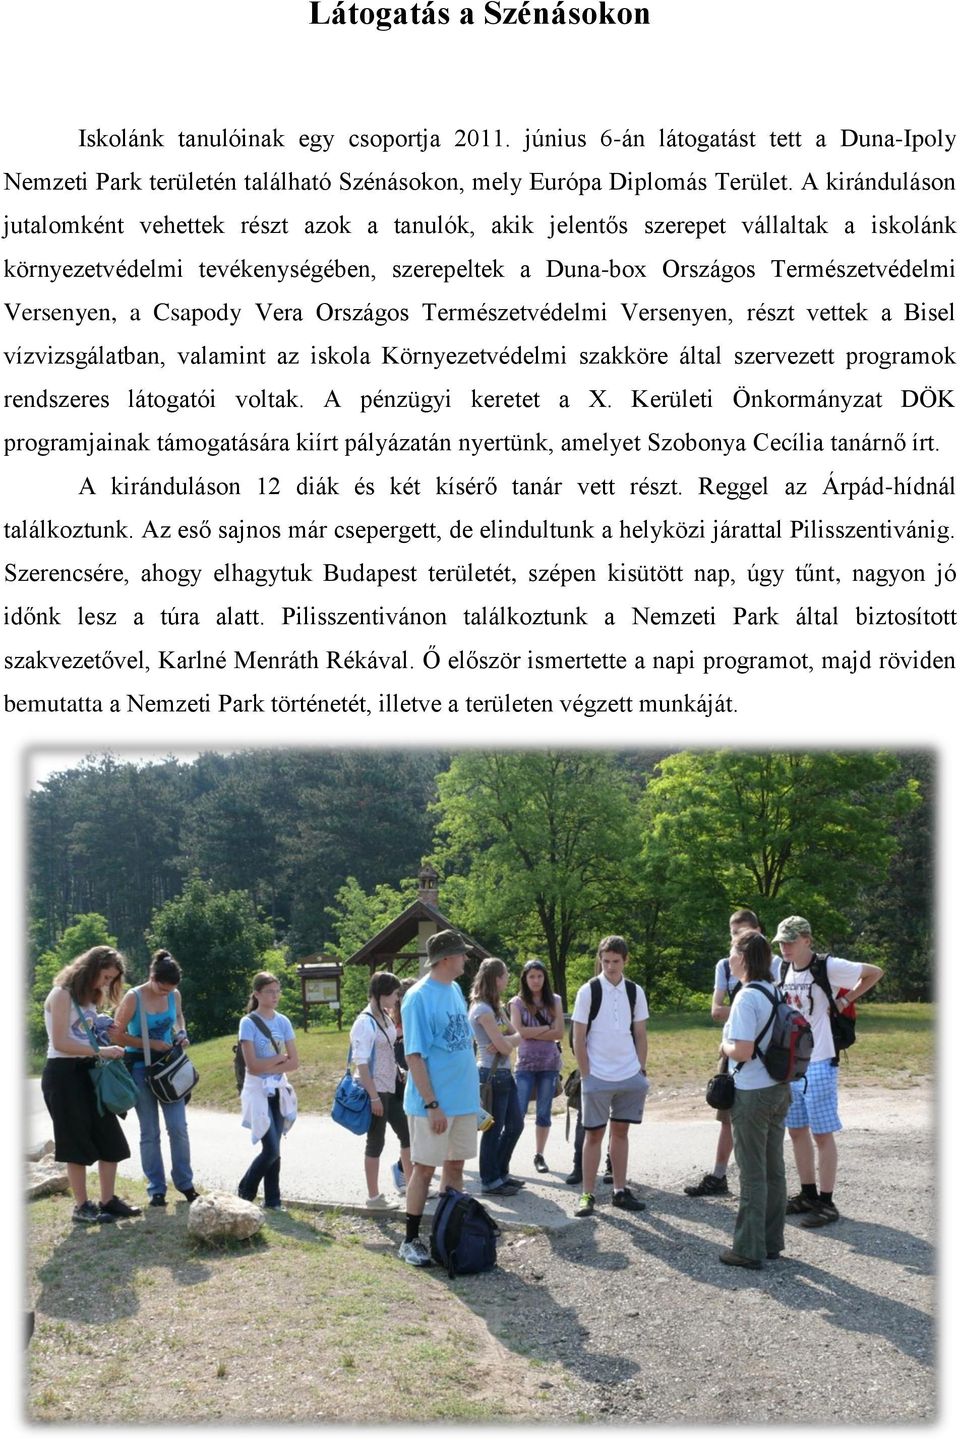 Csapody Vera Országos Természetvédelmi Versenyen, részt vettek a Bisel vízvizsgálatban, valamint az iskola Környezetvédelmi szakköre által szervezett programok rendszeres látogatói voltak.